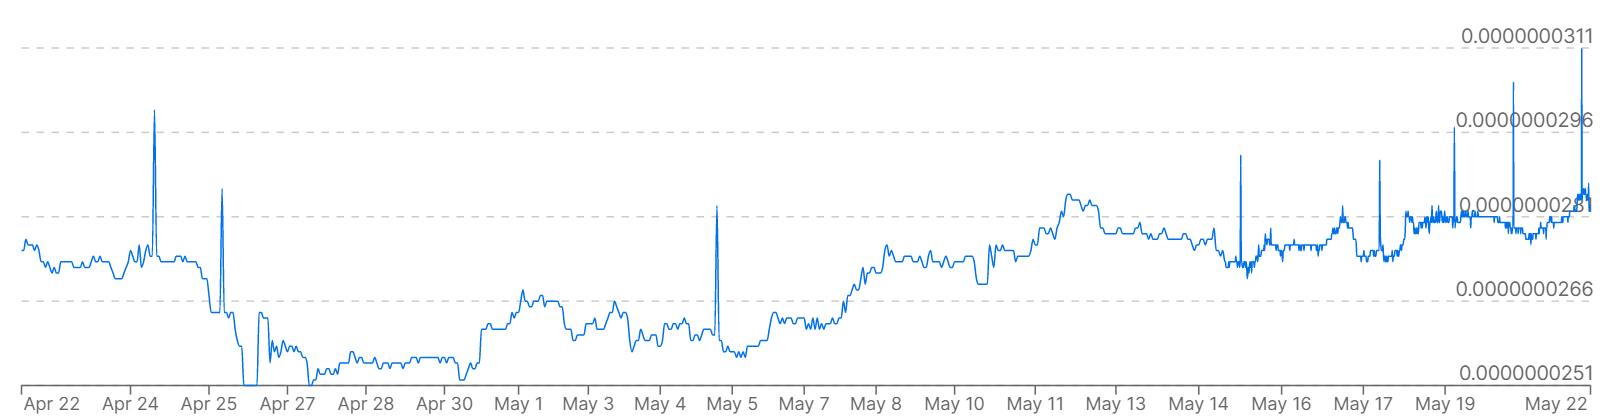 Un gráfico que muestra los precios de Bitcoin frente a la victoria de Corea del Sur durante el último mes.